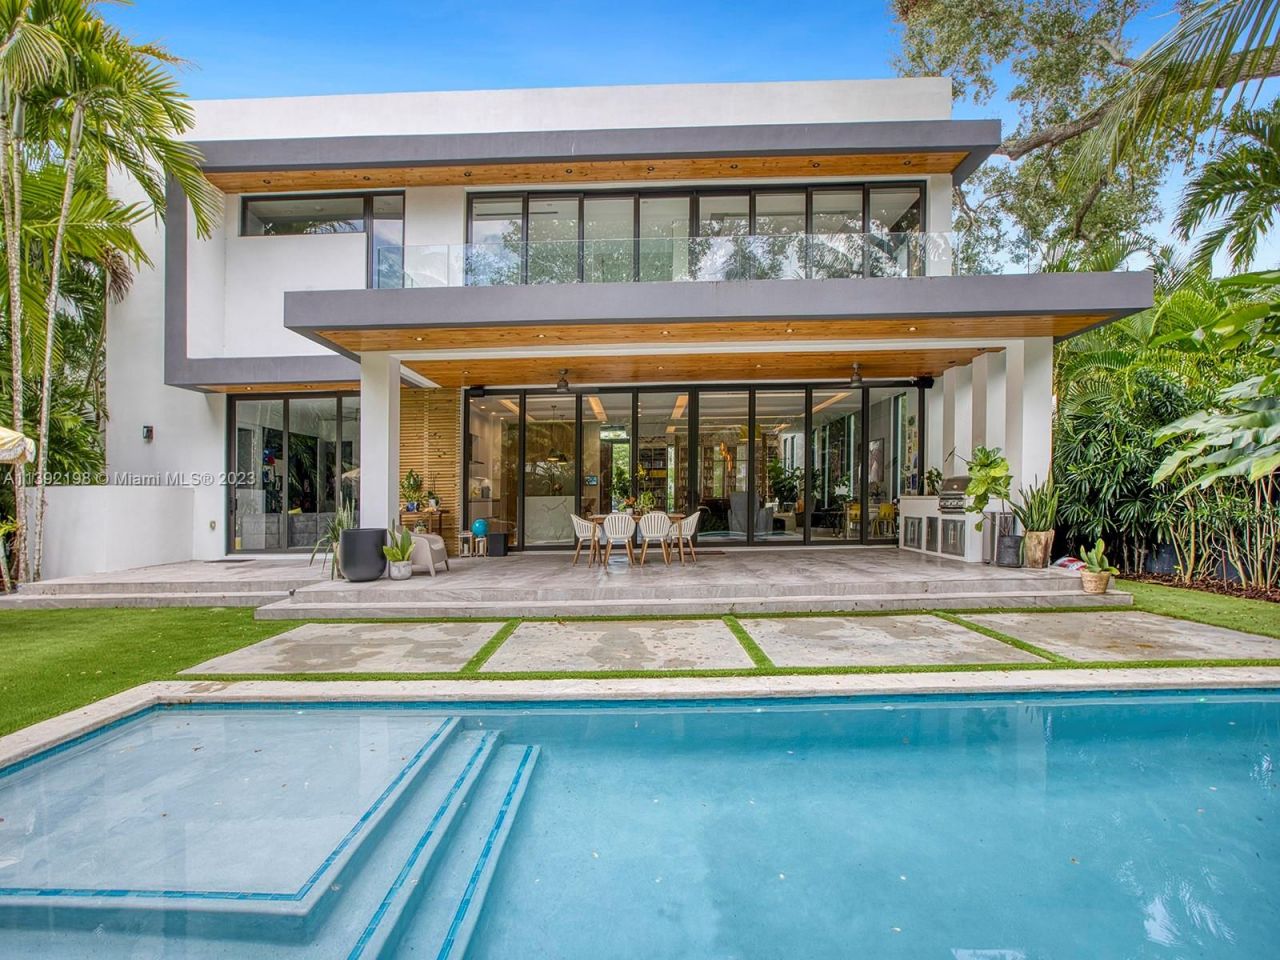 House in Miami, USA, 400 sq.m - picture 1